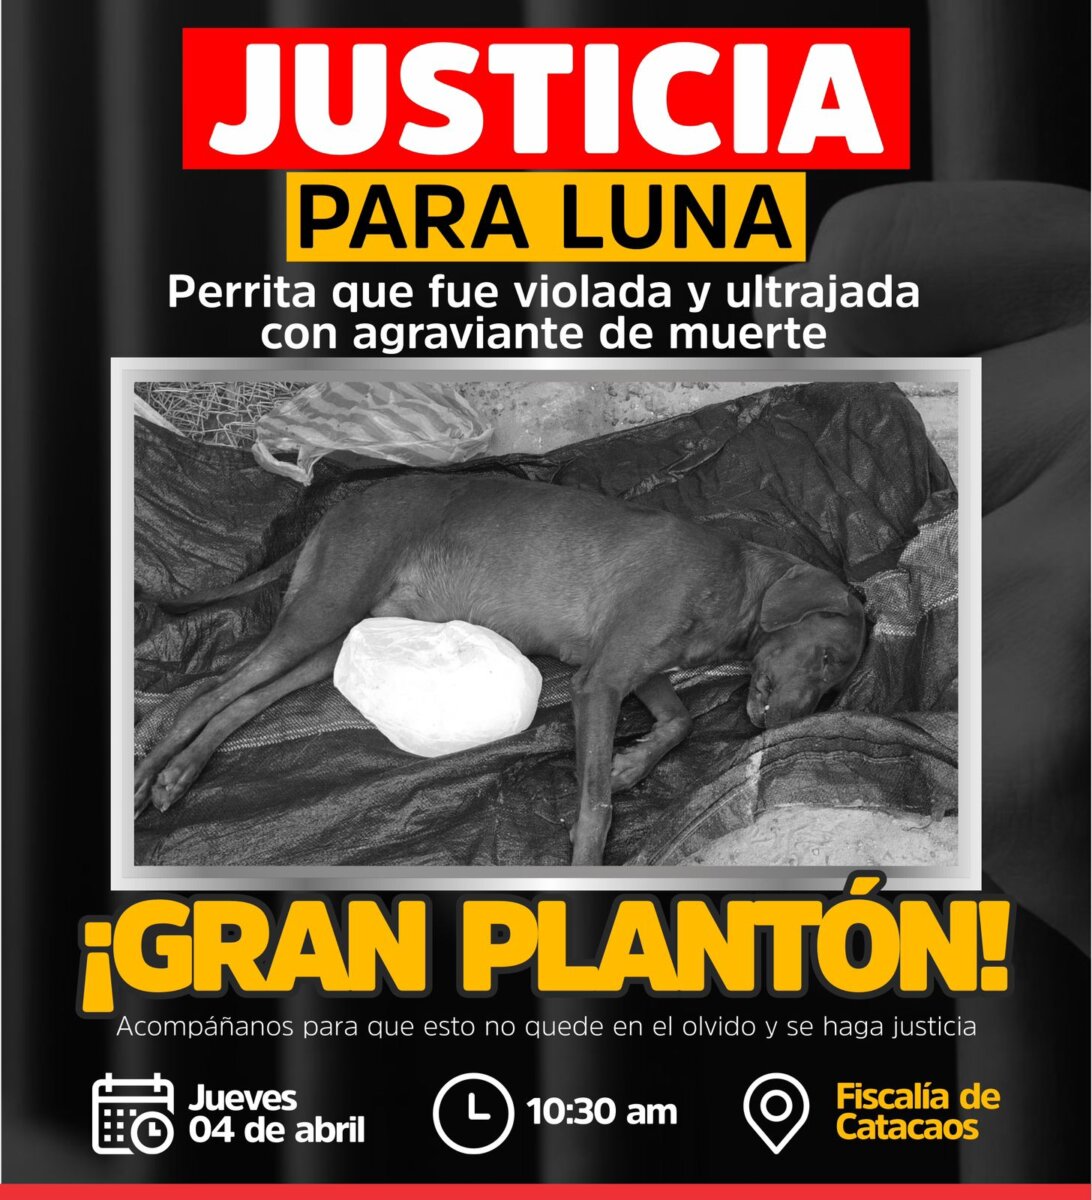 Convocan plantón por caso de maltrato animal en La Unión: Exigen justicia para Luna